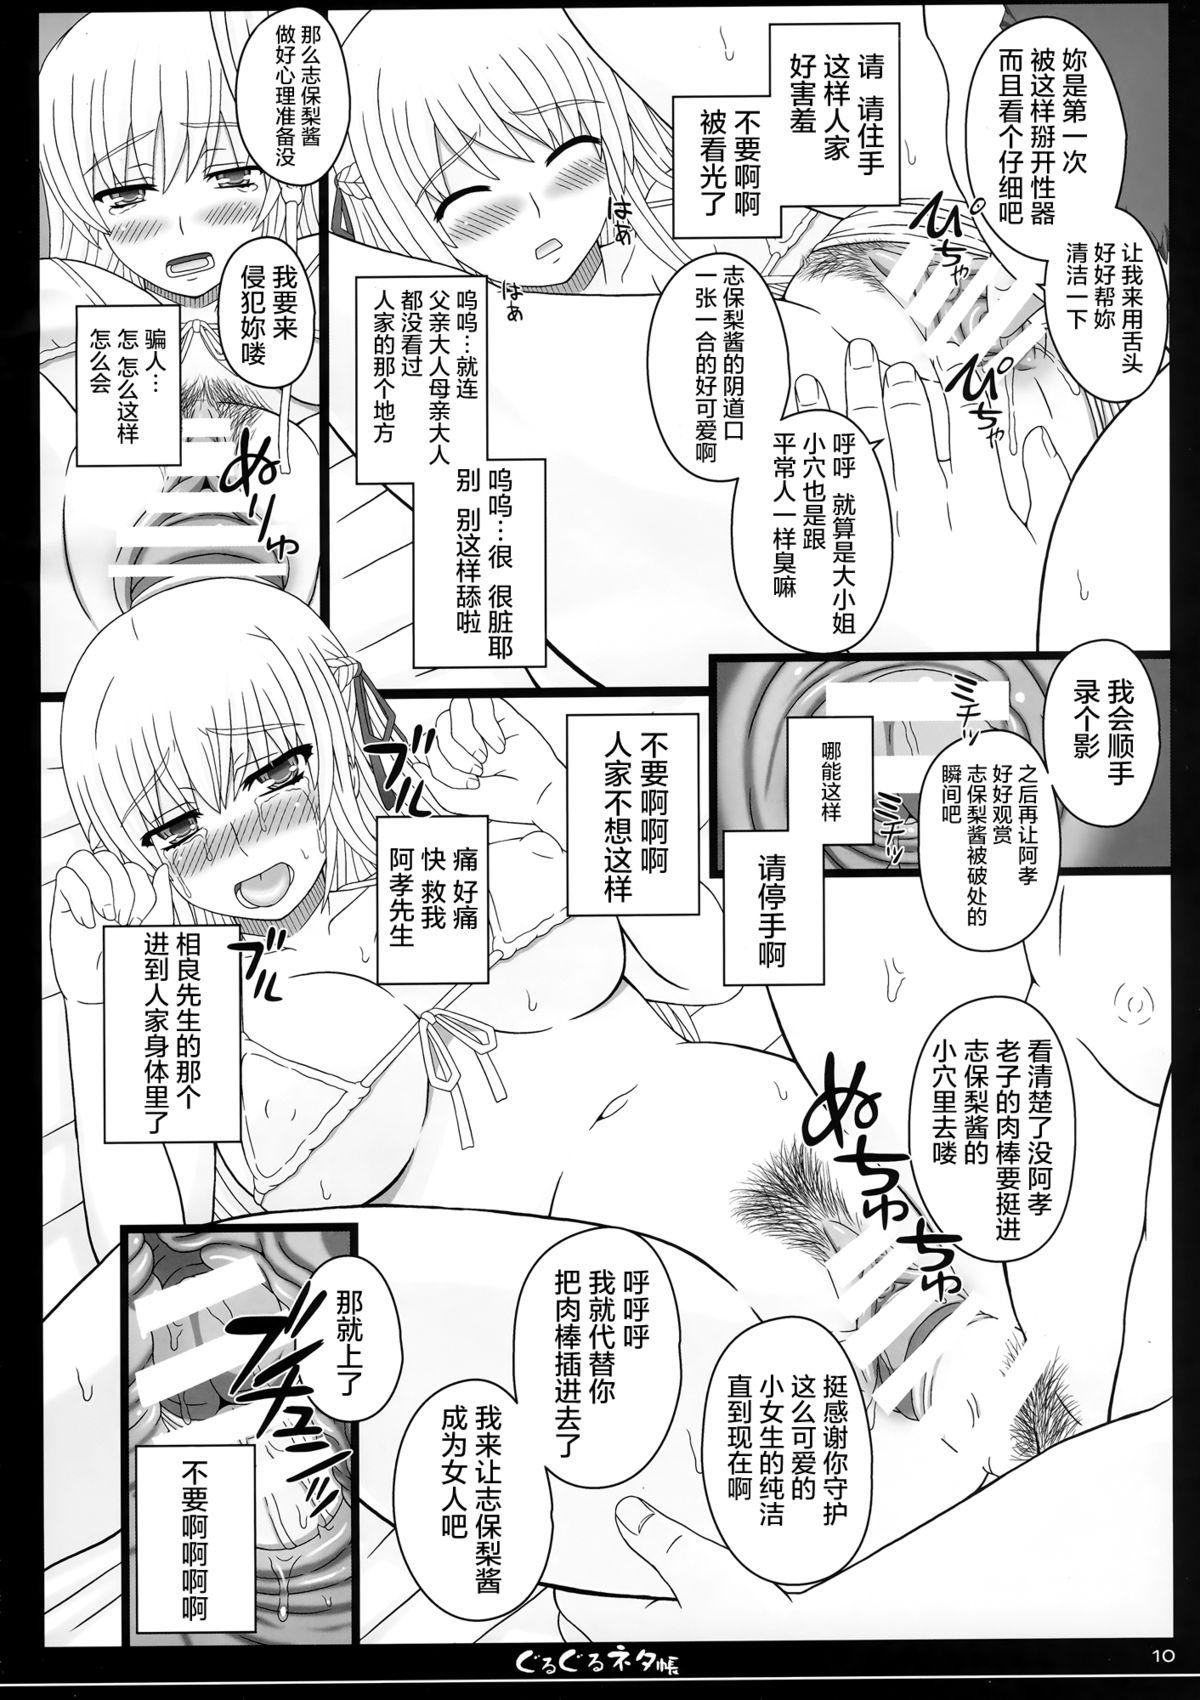 Sharing Shiawase no Katachi no Guruguru Netachou 83R - Kouhai Jikken Hito x Saru Ninshin Shussan Satsuei Huge - Page 11